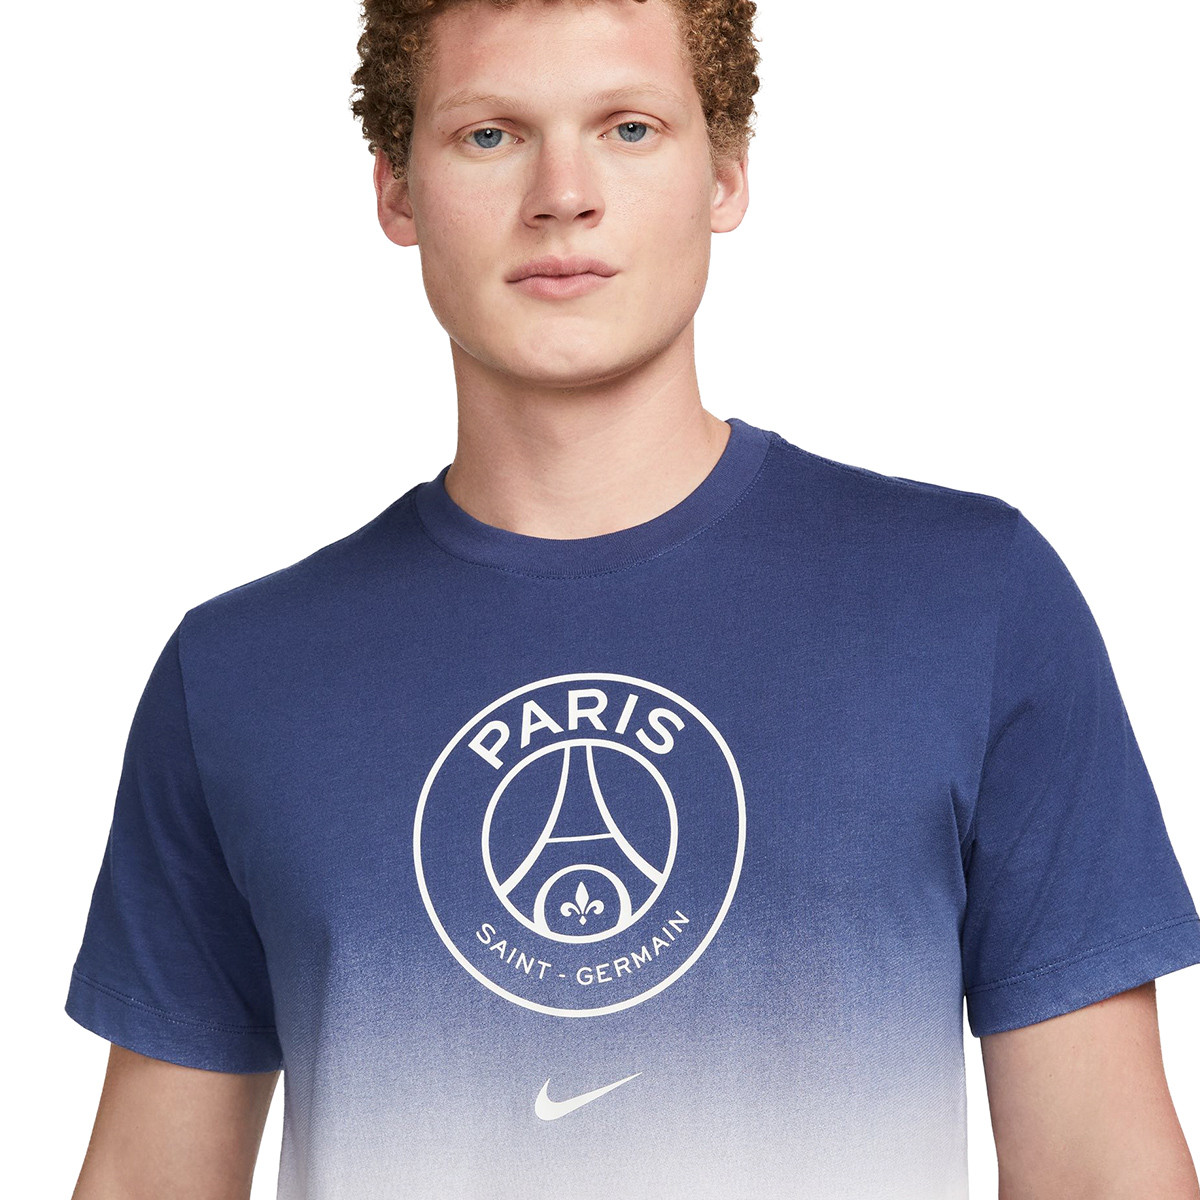 Ballon Nike Paris Saint Germain 2023-2024 White-Midnight Navy-White -  Fútbol Emotion